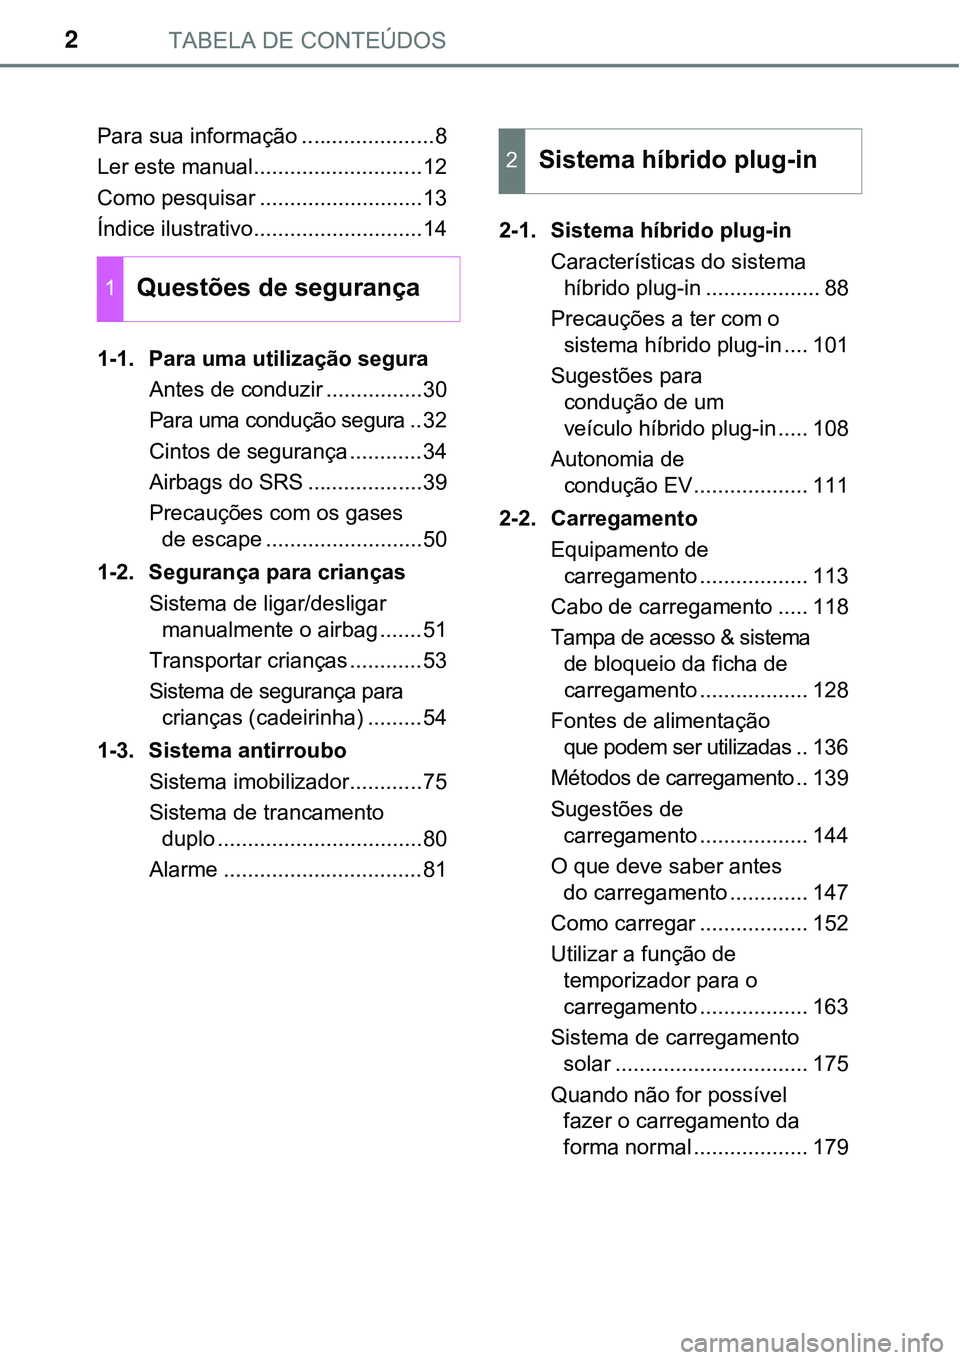 TOYOTA PRIUS PLUG-IN HYBRID 2016  Manual de utilização (in Portuguese) TABELA DE CONTEÚDOS2
Para sua informação ......................8
Ler este manual............................12
Como pesquisar ...........................13
Índice ilustrativo......................